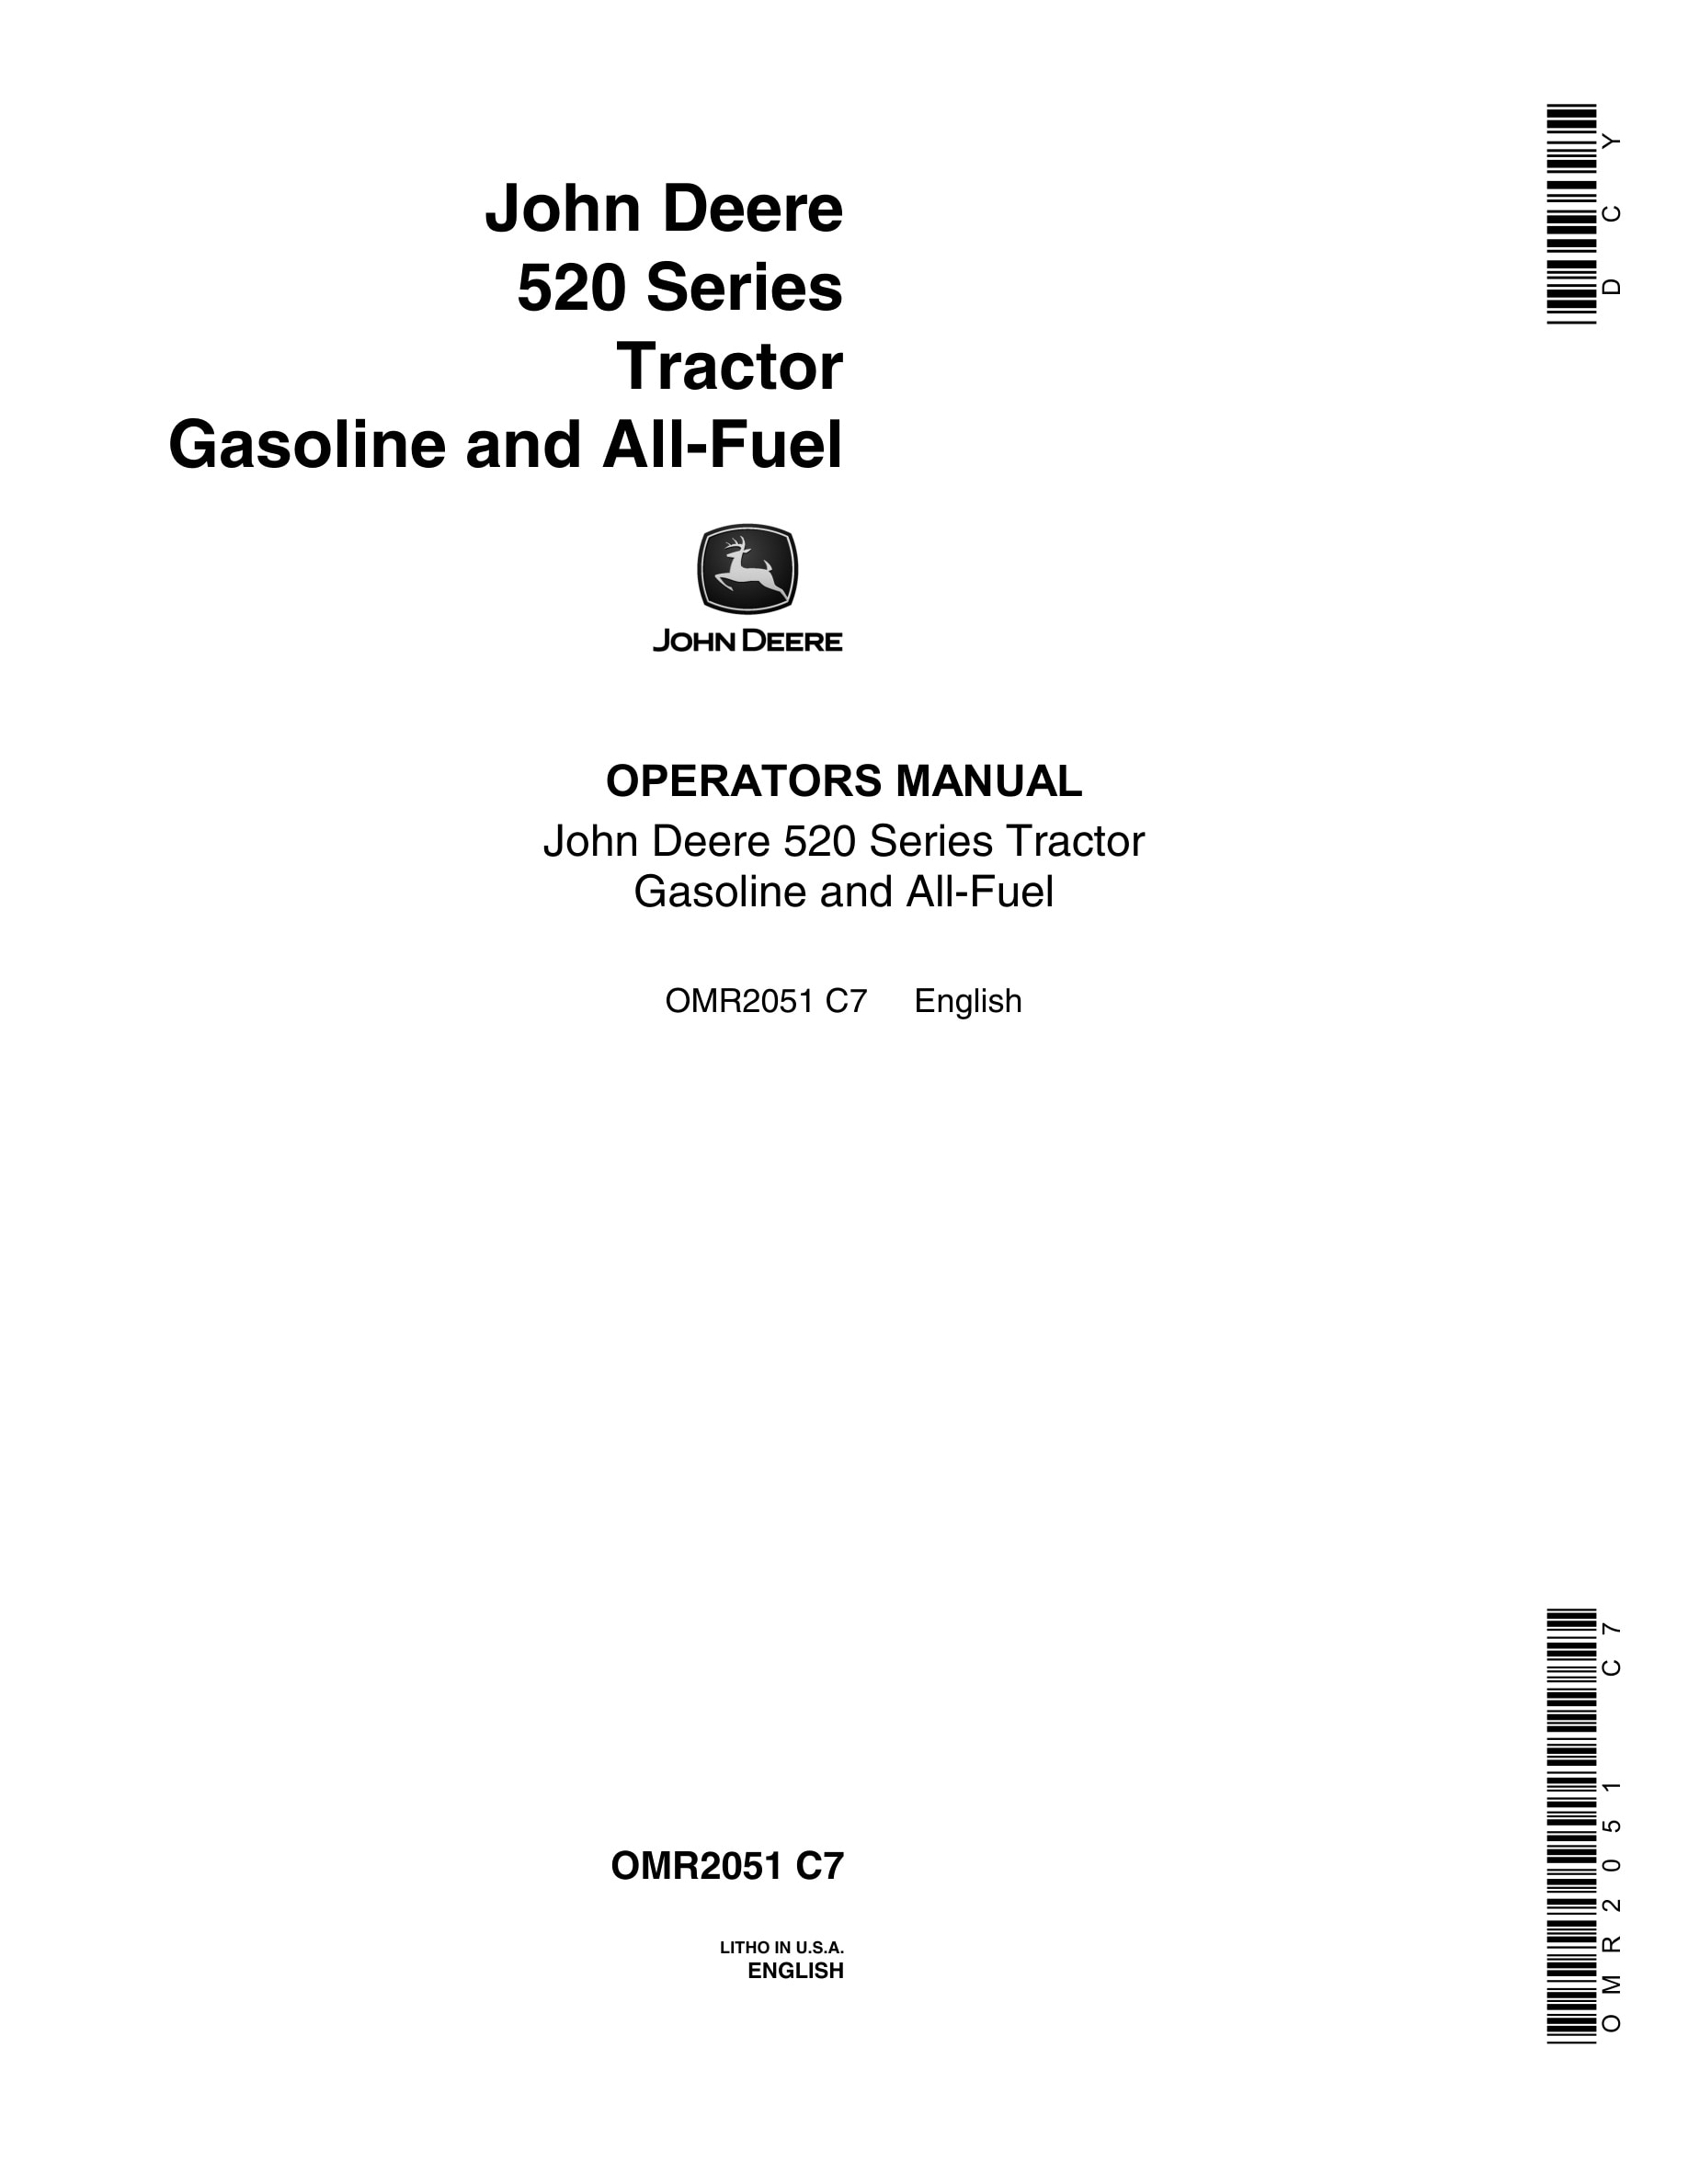 John Deere 520 Series Tractor Operator Manual OMR2051-1